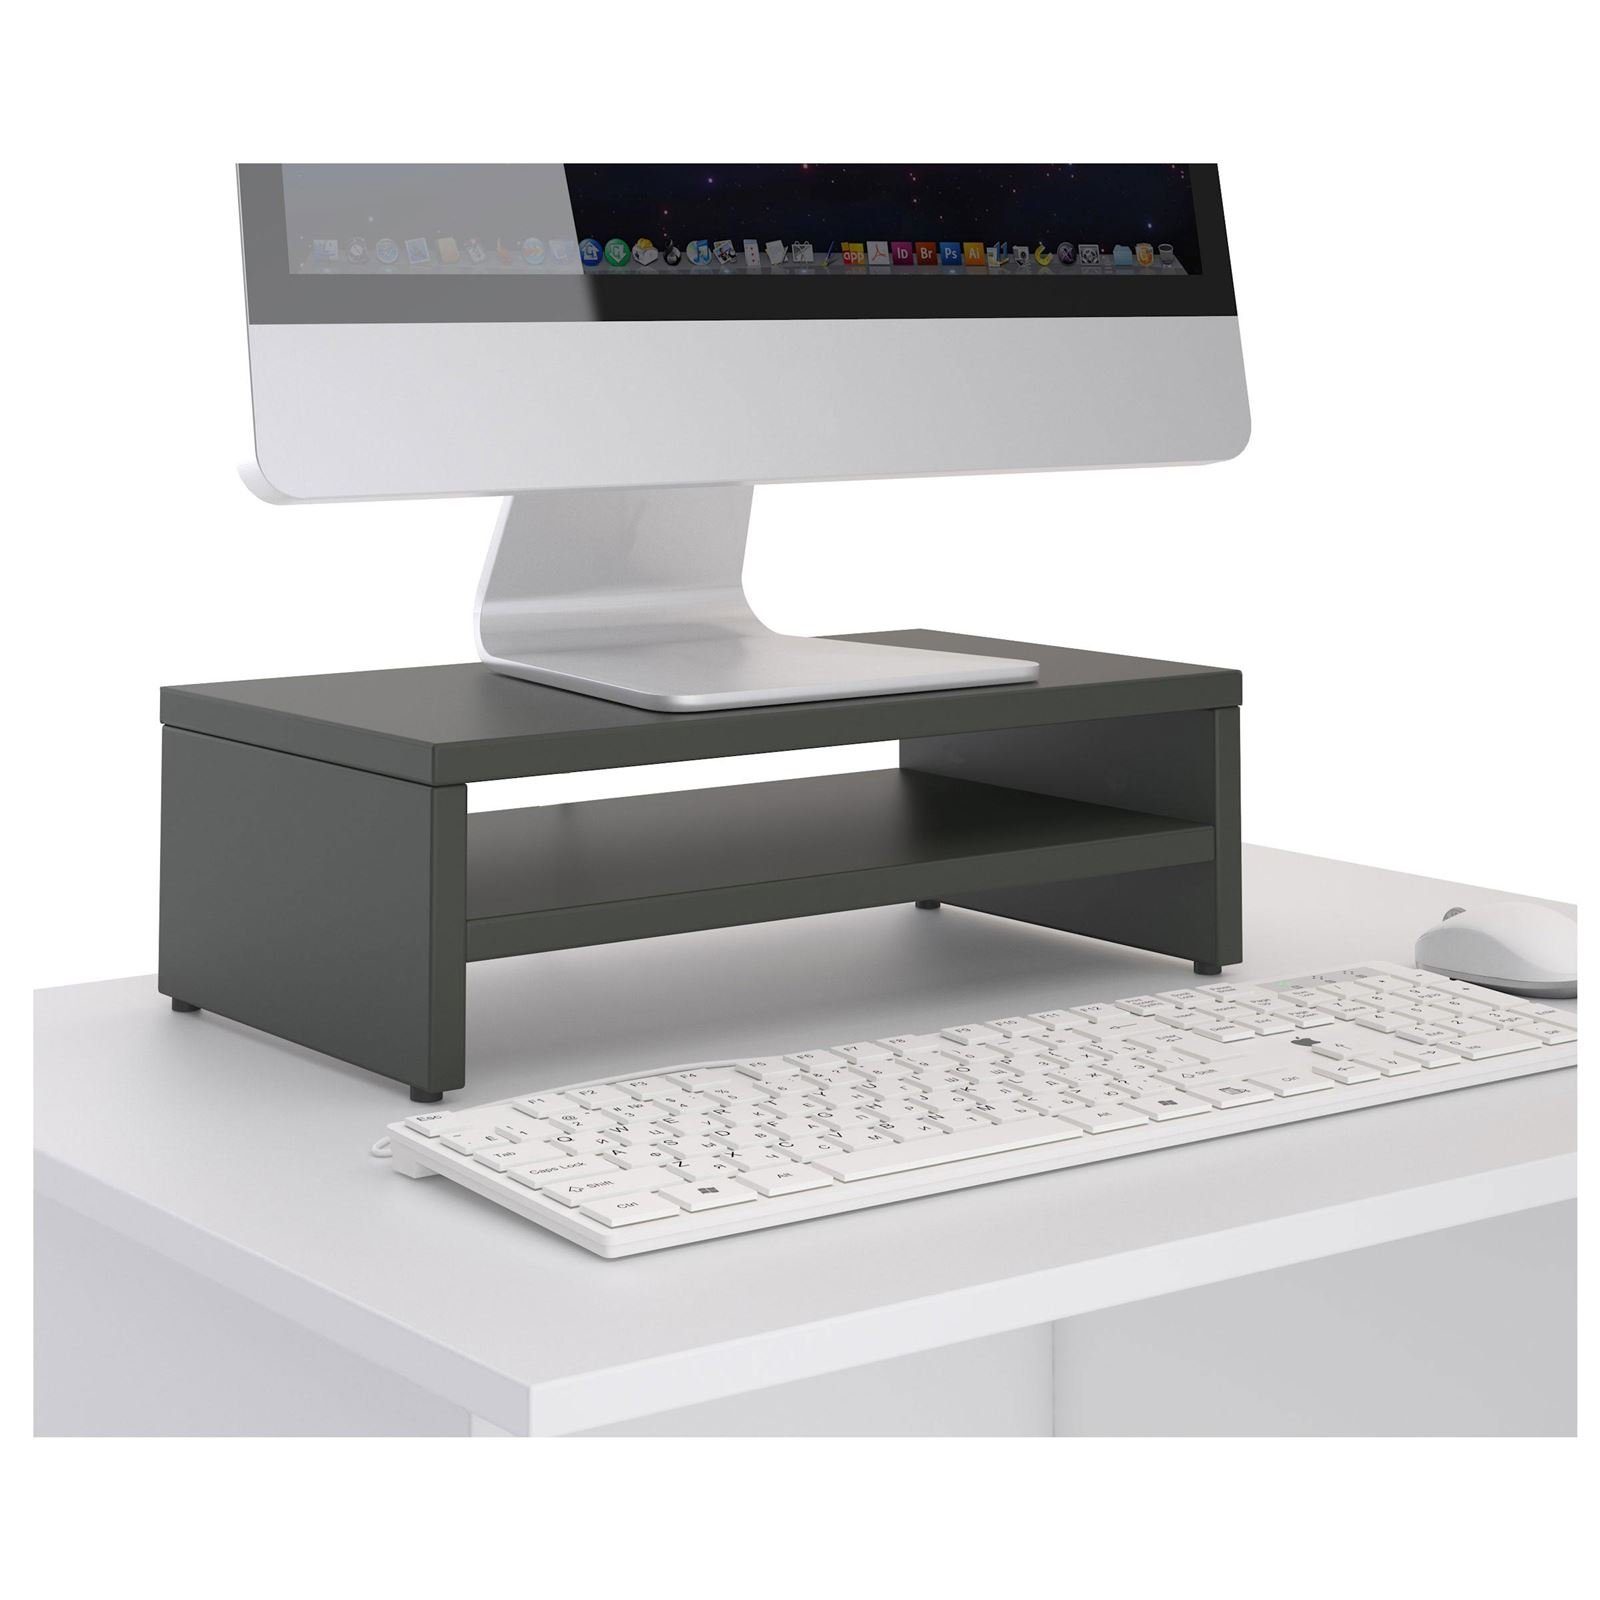 grau Ablagefach inkl. SUBIDA, CARO-Möbel Monitorerhöhung Bildschirmaufsatz Monitorständer Schreibtischaufsatz